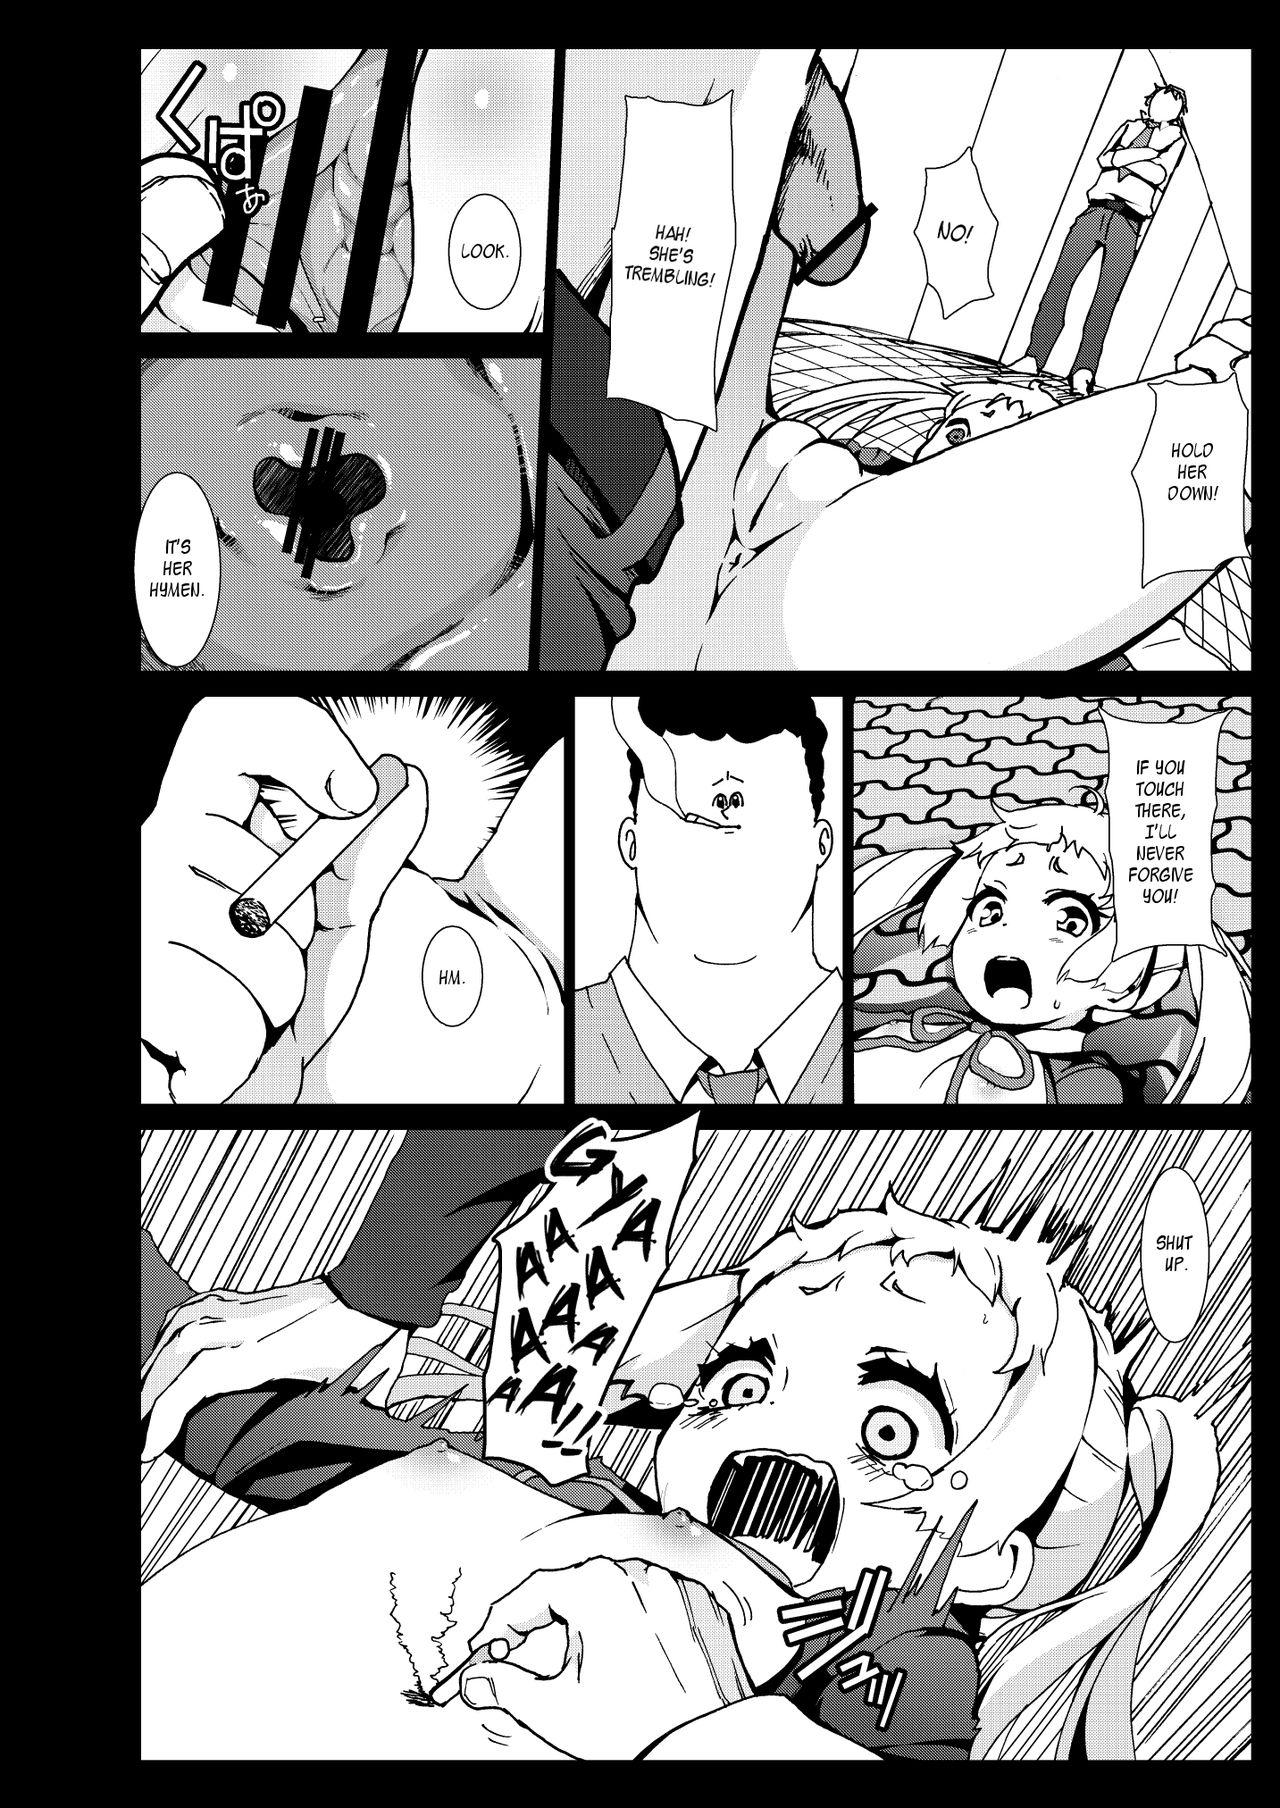 Massage Sex Warae yo Dekomori... Chuunibyou demo Shojo Rape Shitai! | Smile Dekomori... Rape, Chuunibyou, and Other Delusions! - Chuunibyou demo koi ga shitai High Definition - Page 11